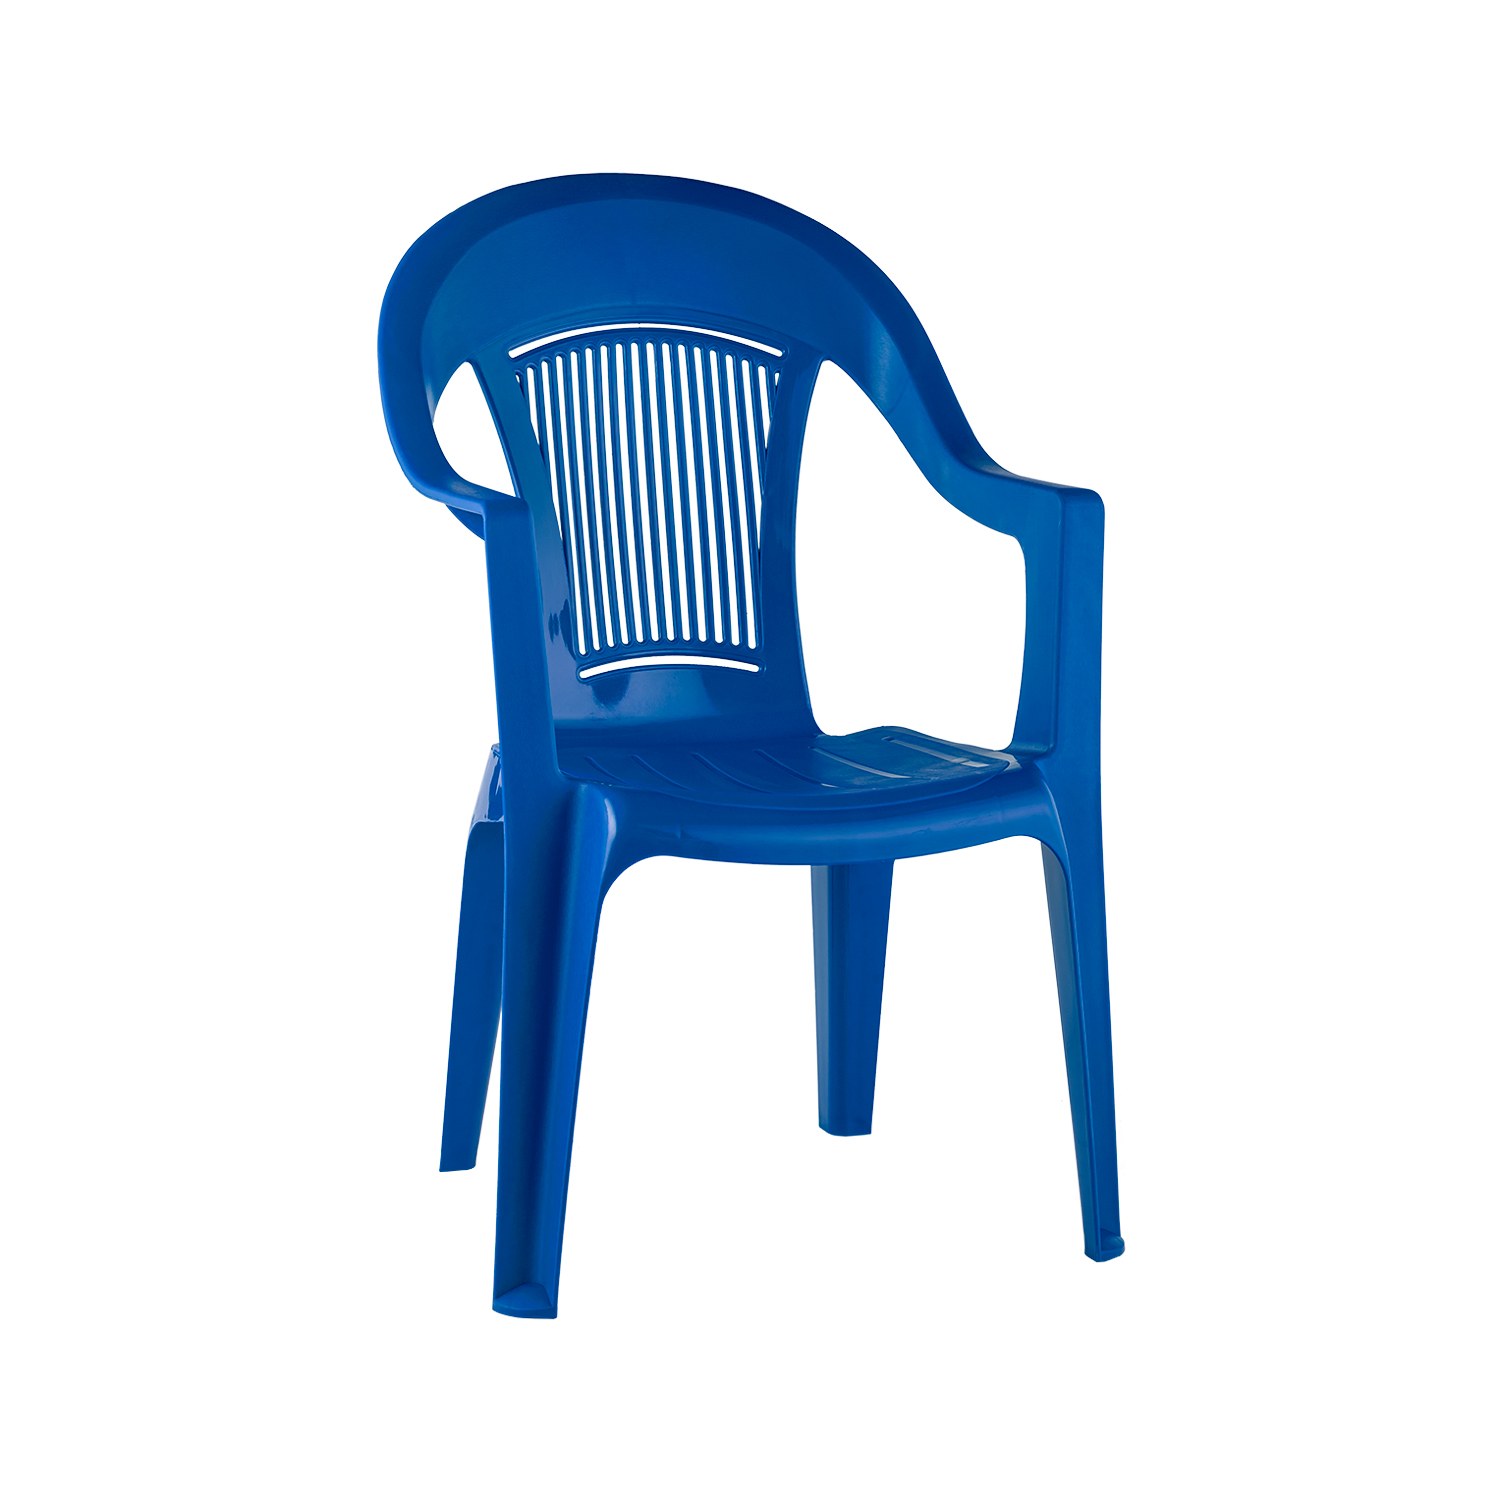 Пластиковые кресла офисные. Садовые стулья ellastik-Plast. Стул пластиковый ЭЛП (Элегант). Кресло пластиковое Elegant Scratchproof monobloc. Стул пластиковый эластик пласт.